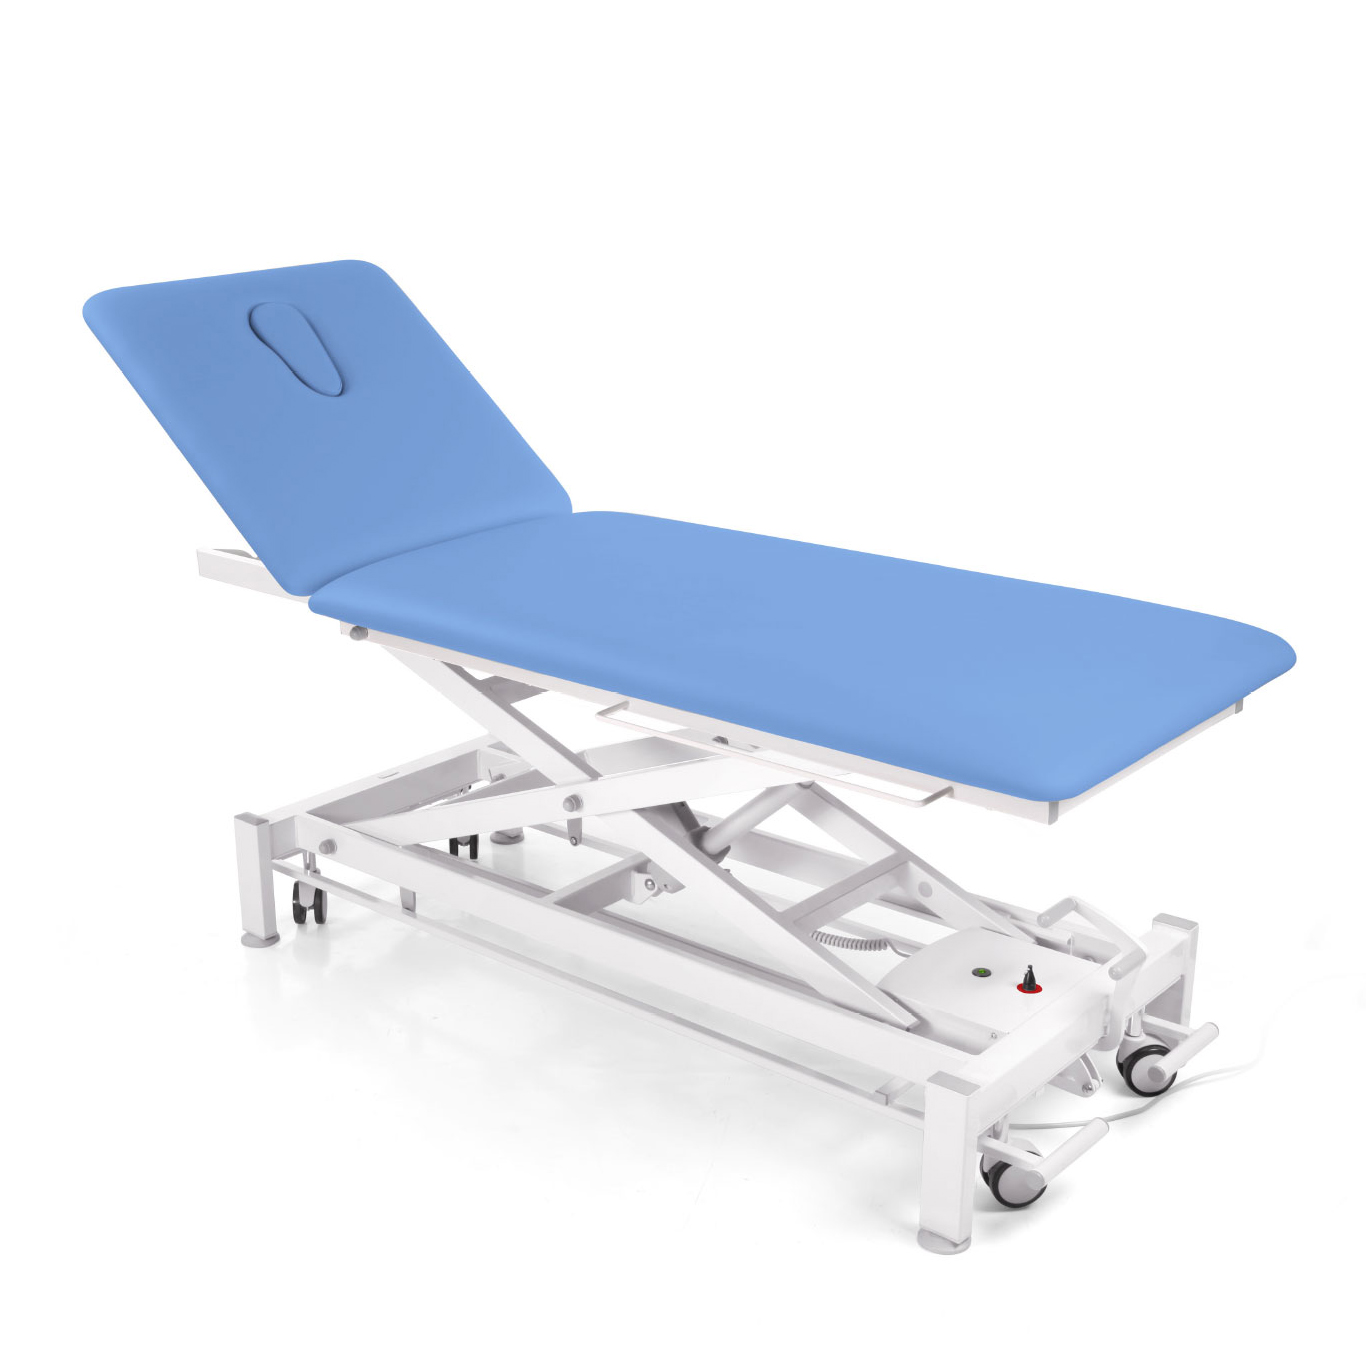 Produktbild CHATTANOOGA® Galaxy Liege 2-teilig Rückenteil blau, Behandlungsliege, Rückenteil